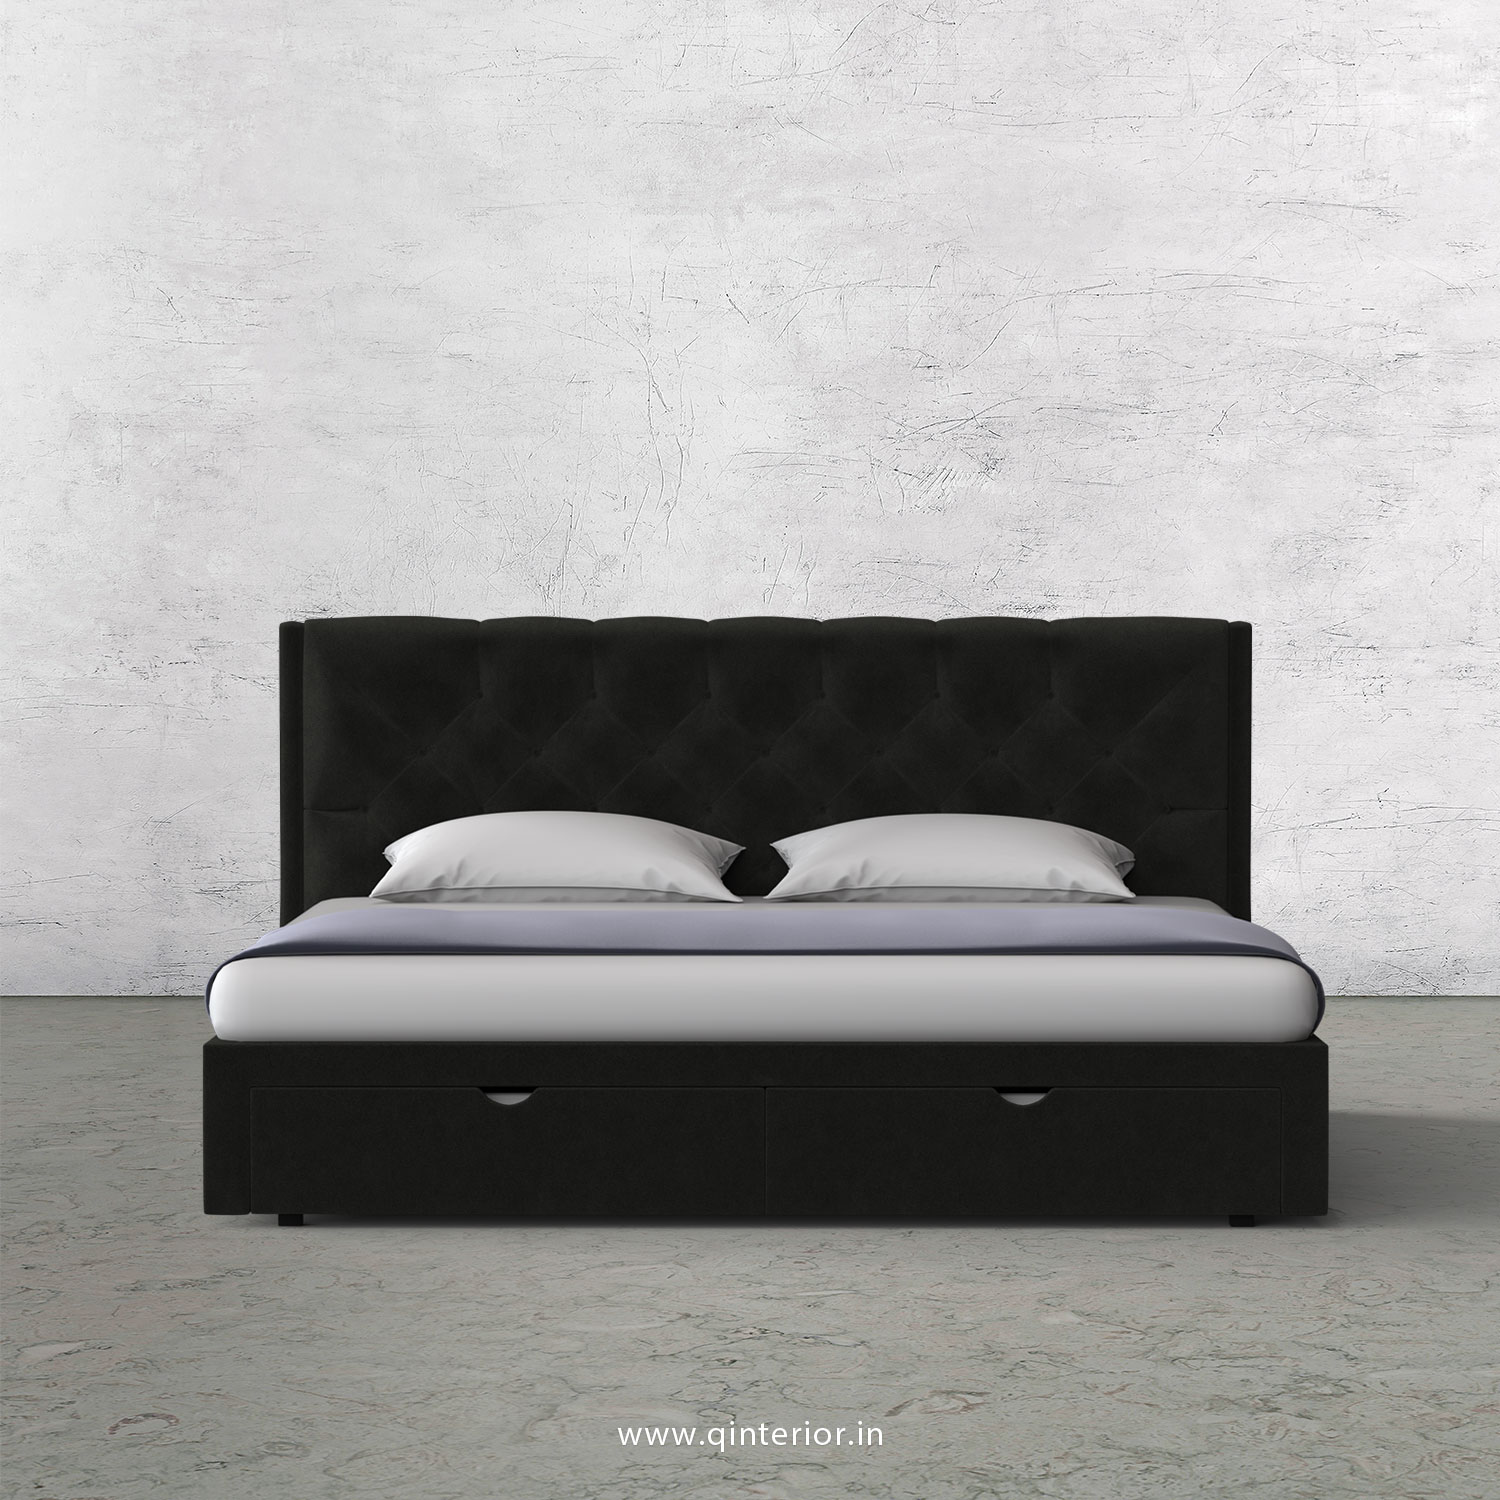 Scorpius Queen Storage Bed in Velvet Fabric - QBD001 VL07